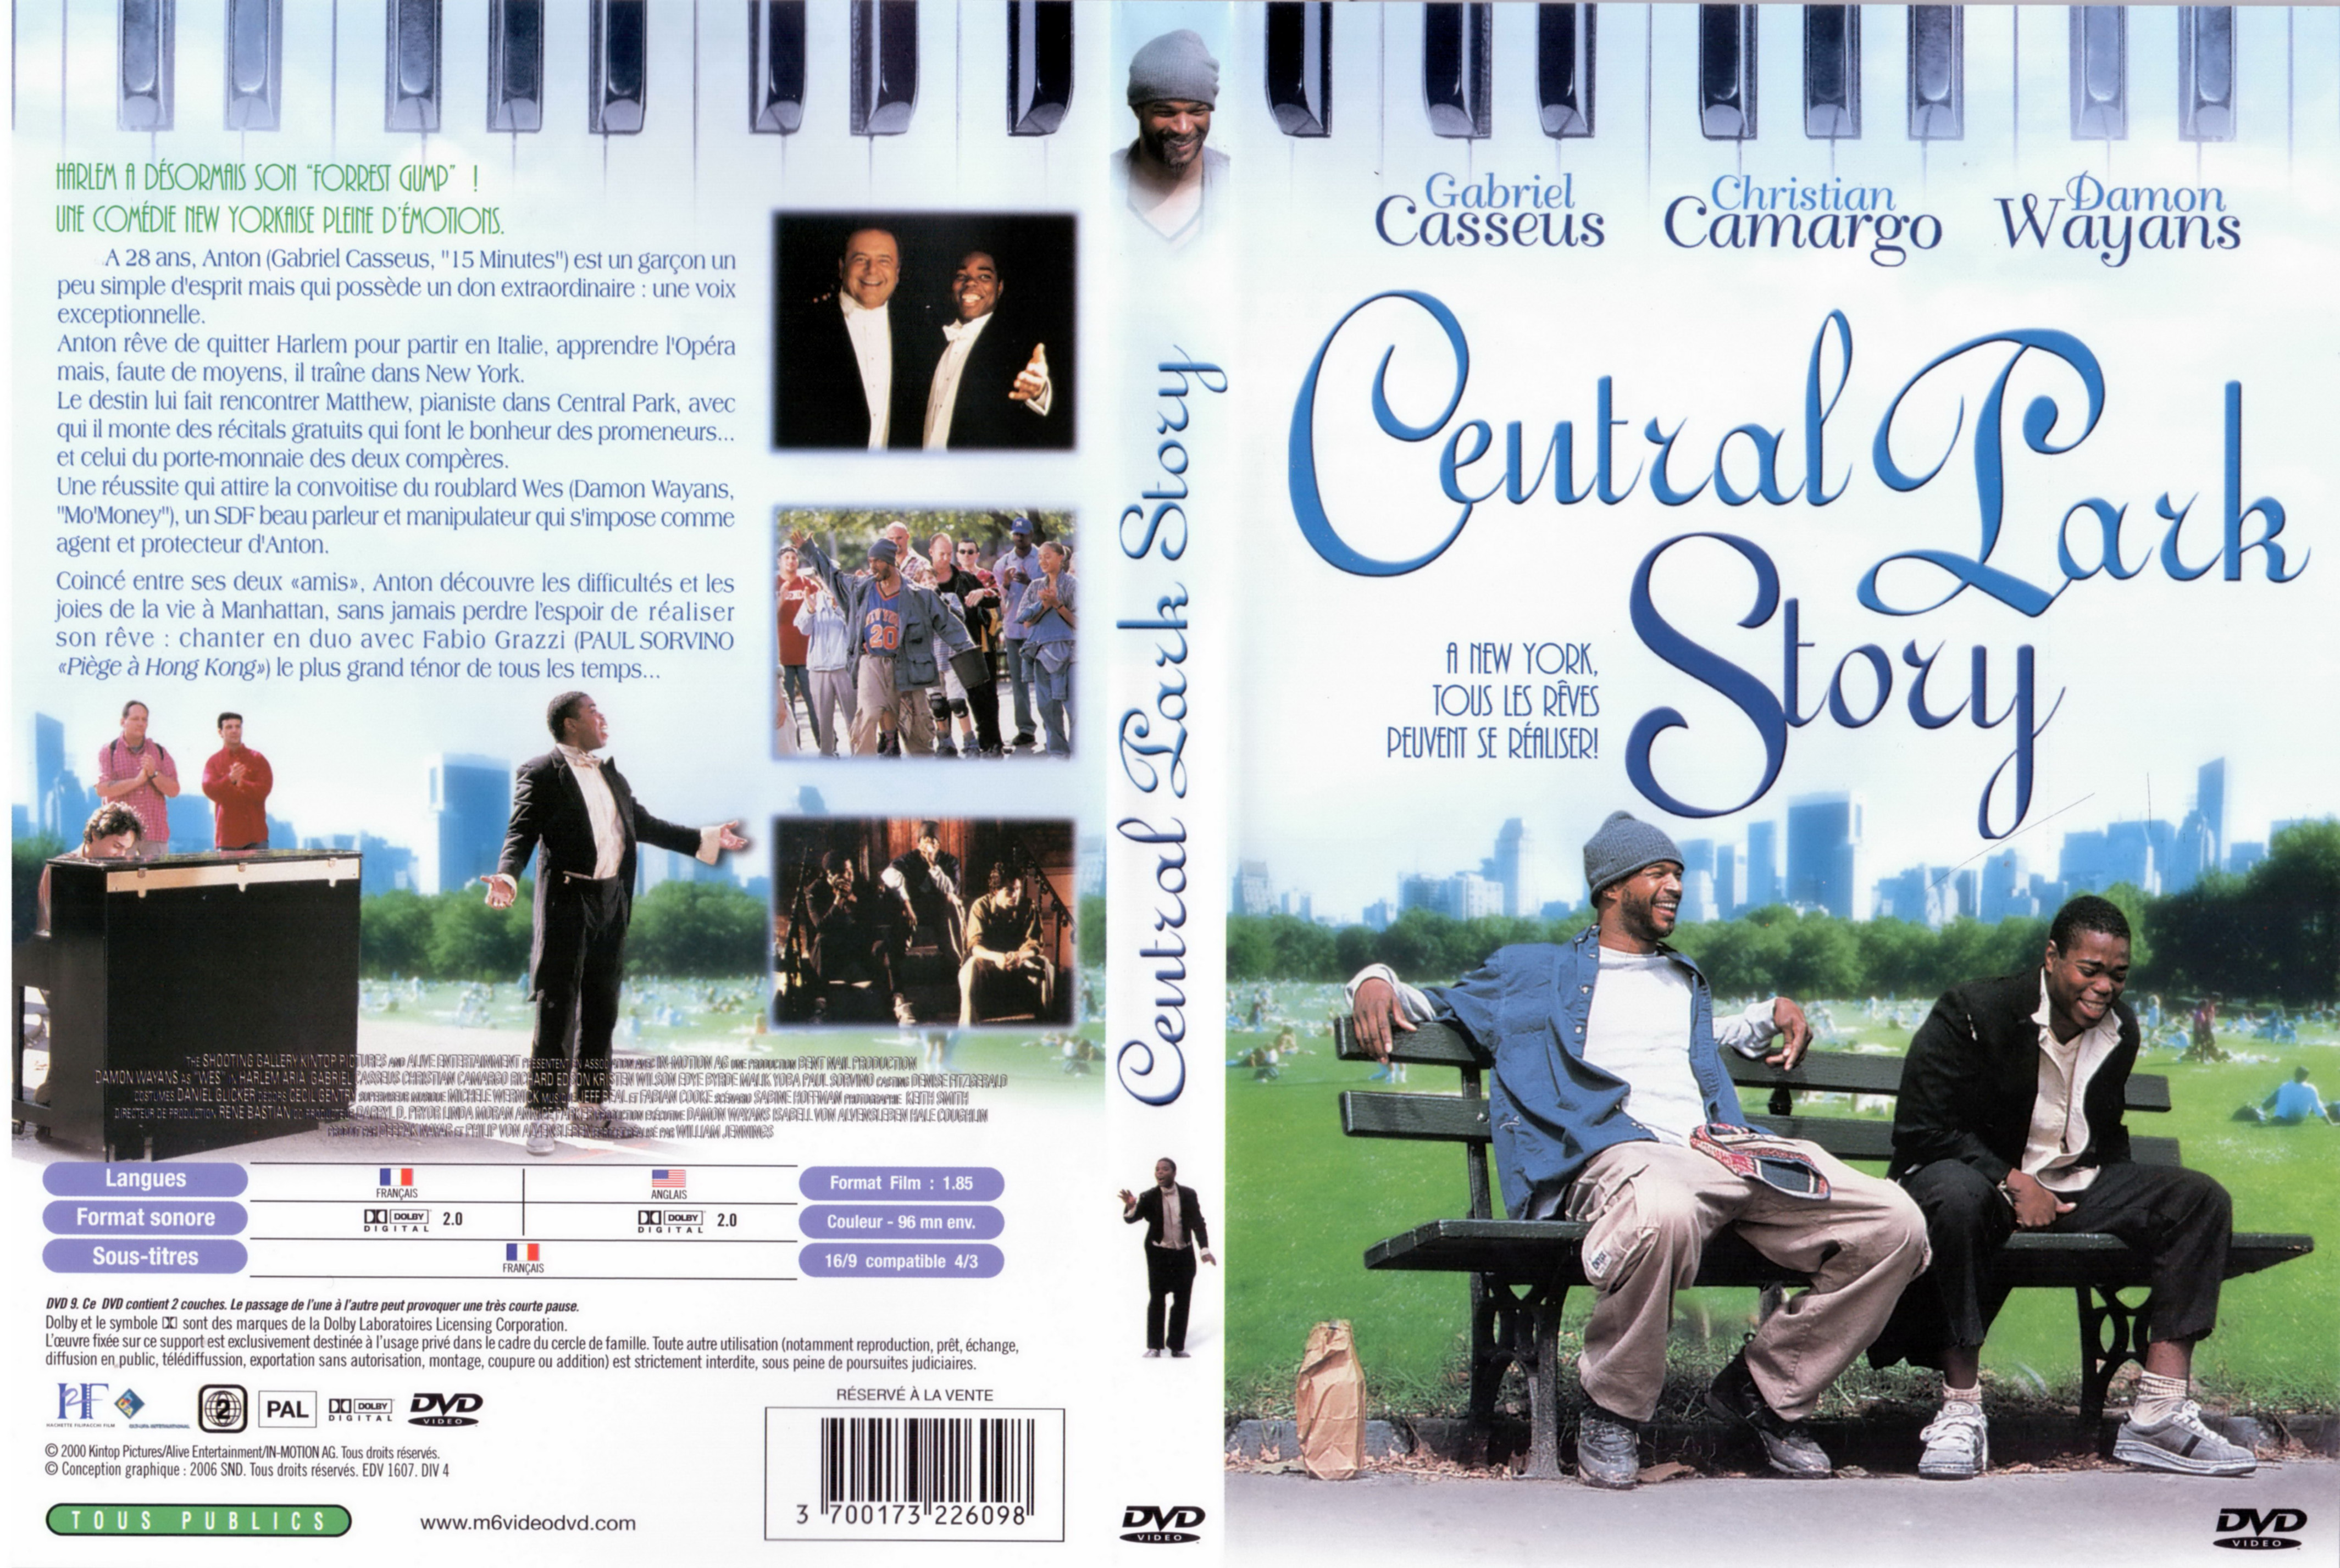 Jaquette DVD Central park story